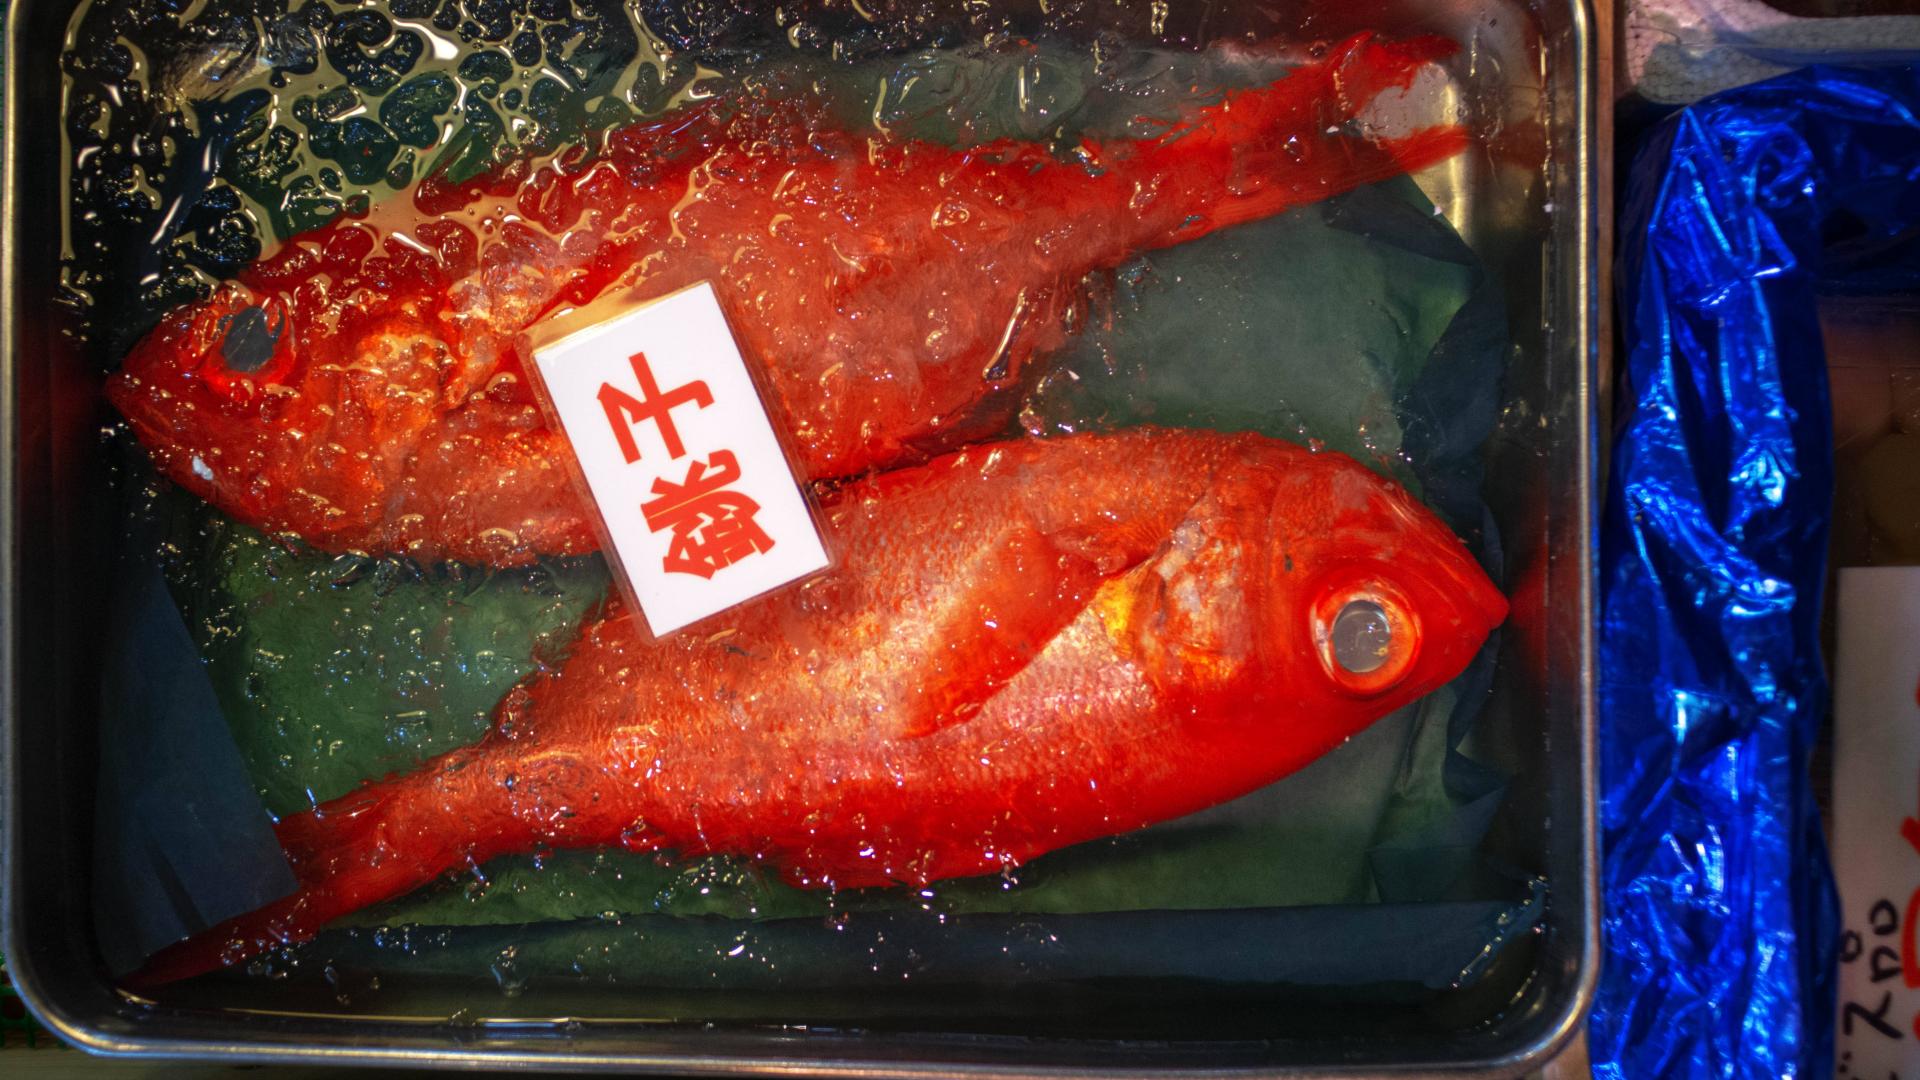 Fisch, Fischmarkt, Japan, Tsukiji Fischmarkt, japanische Küche, japanische Lebensmittel, japanische Ernährung